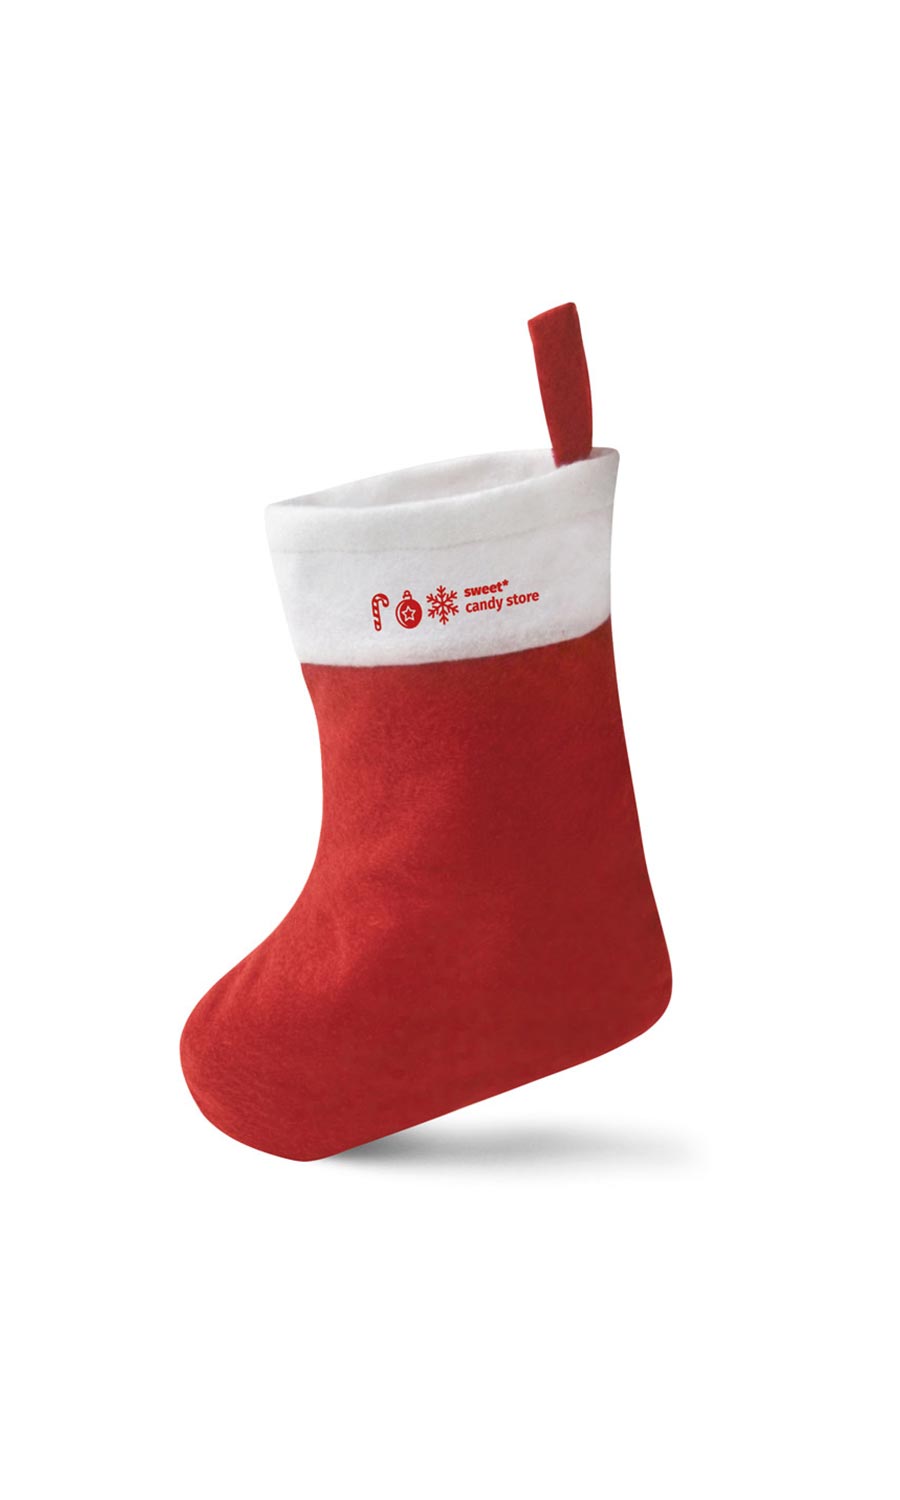 Bolsita para Navidad con forma de bota de Papá Noel como regalo personalizado